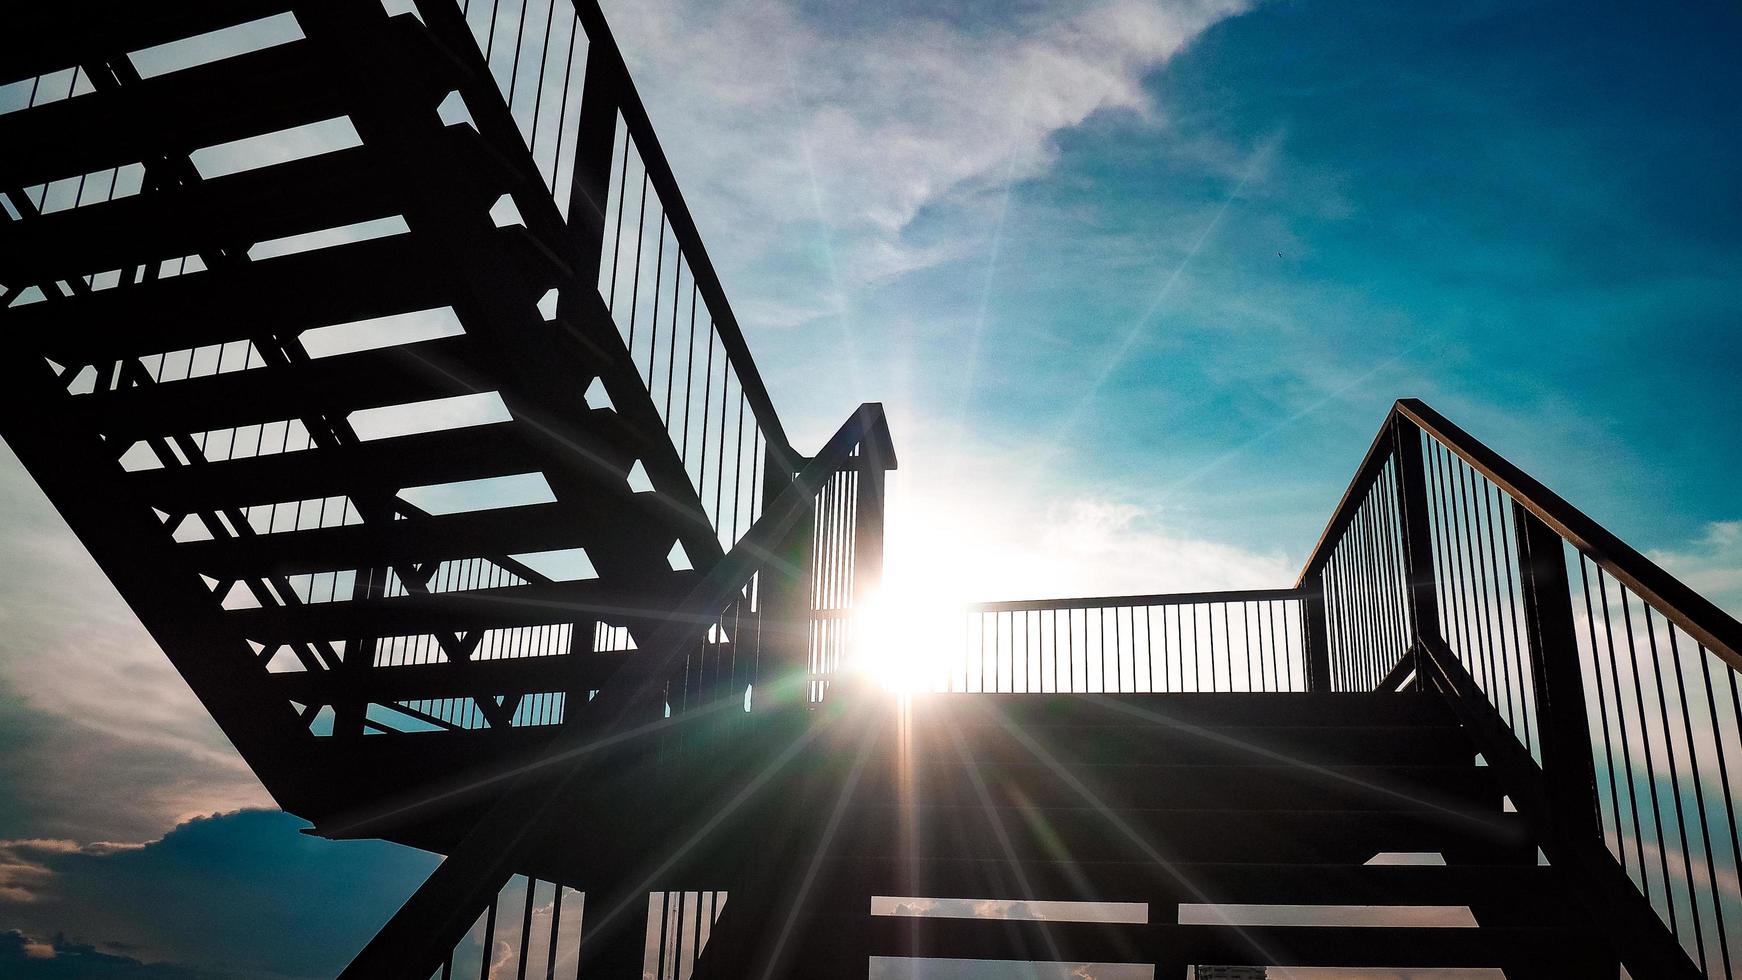 escalera de hierro al aire libre construcción de arquitectura de estructura de acero de color negro sobre la luz del sol con un hermoso fondo de cielo azul foto